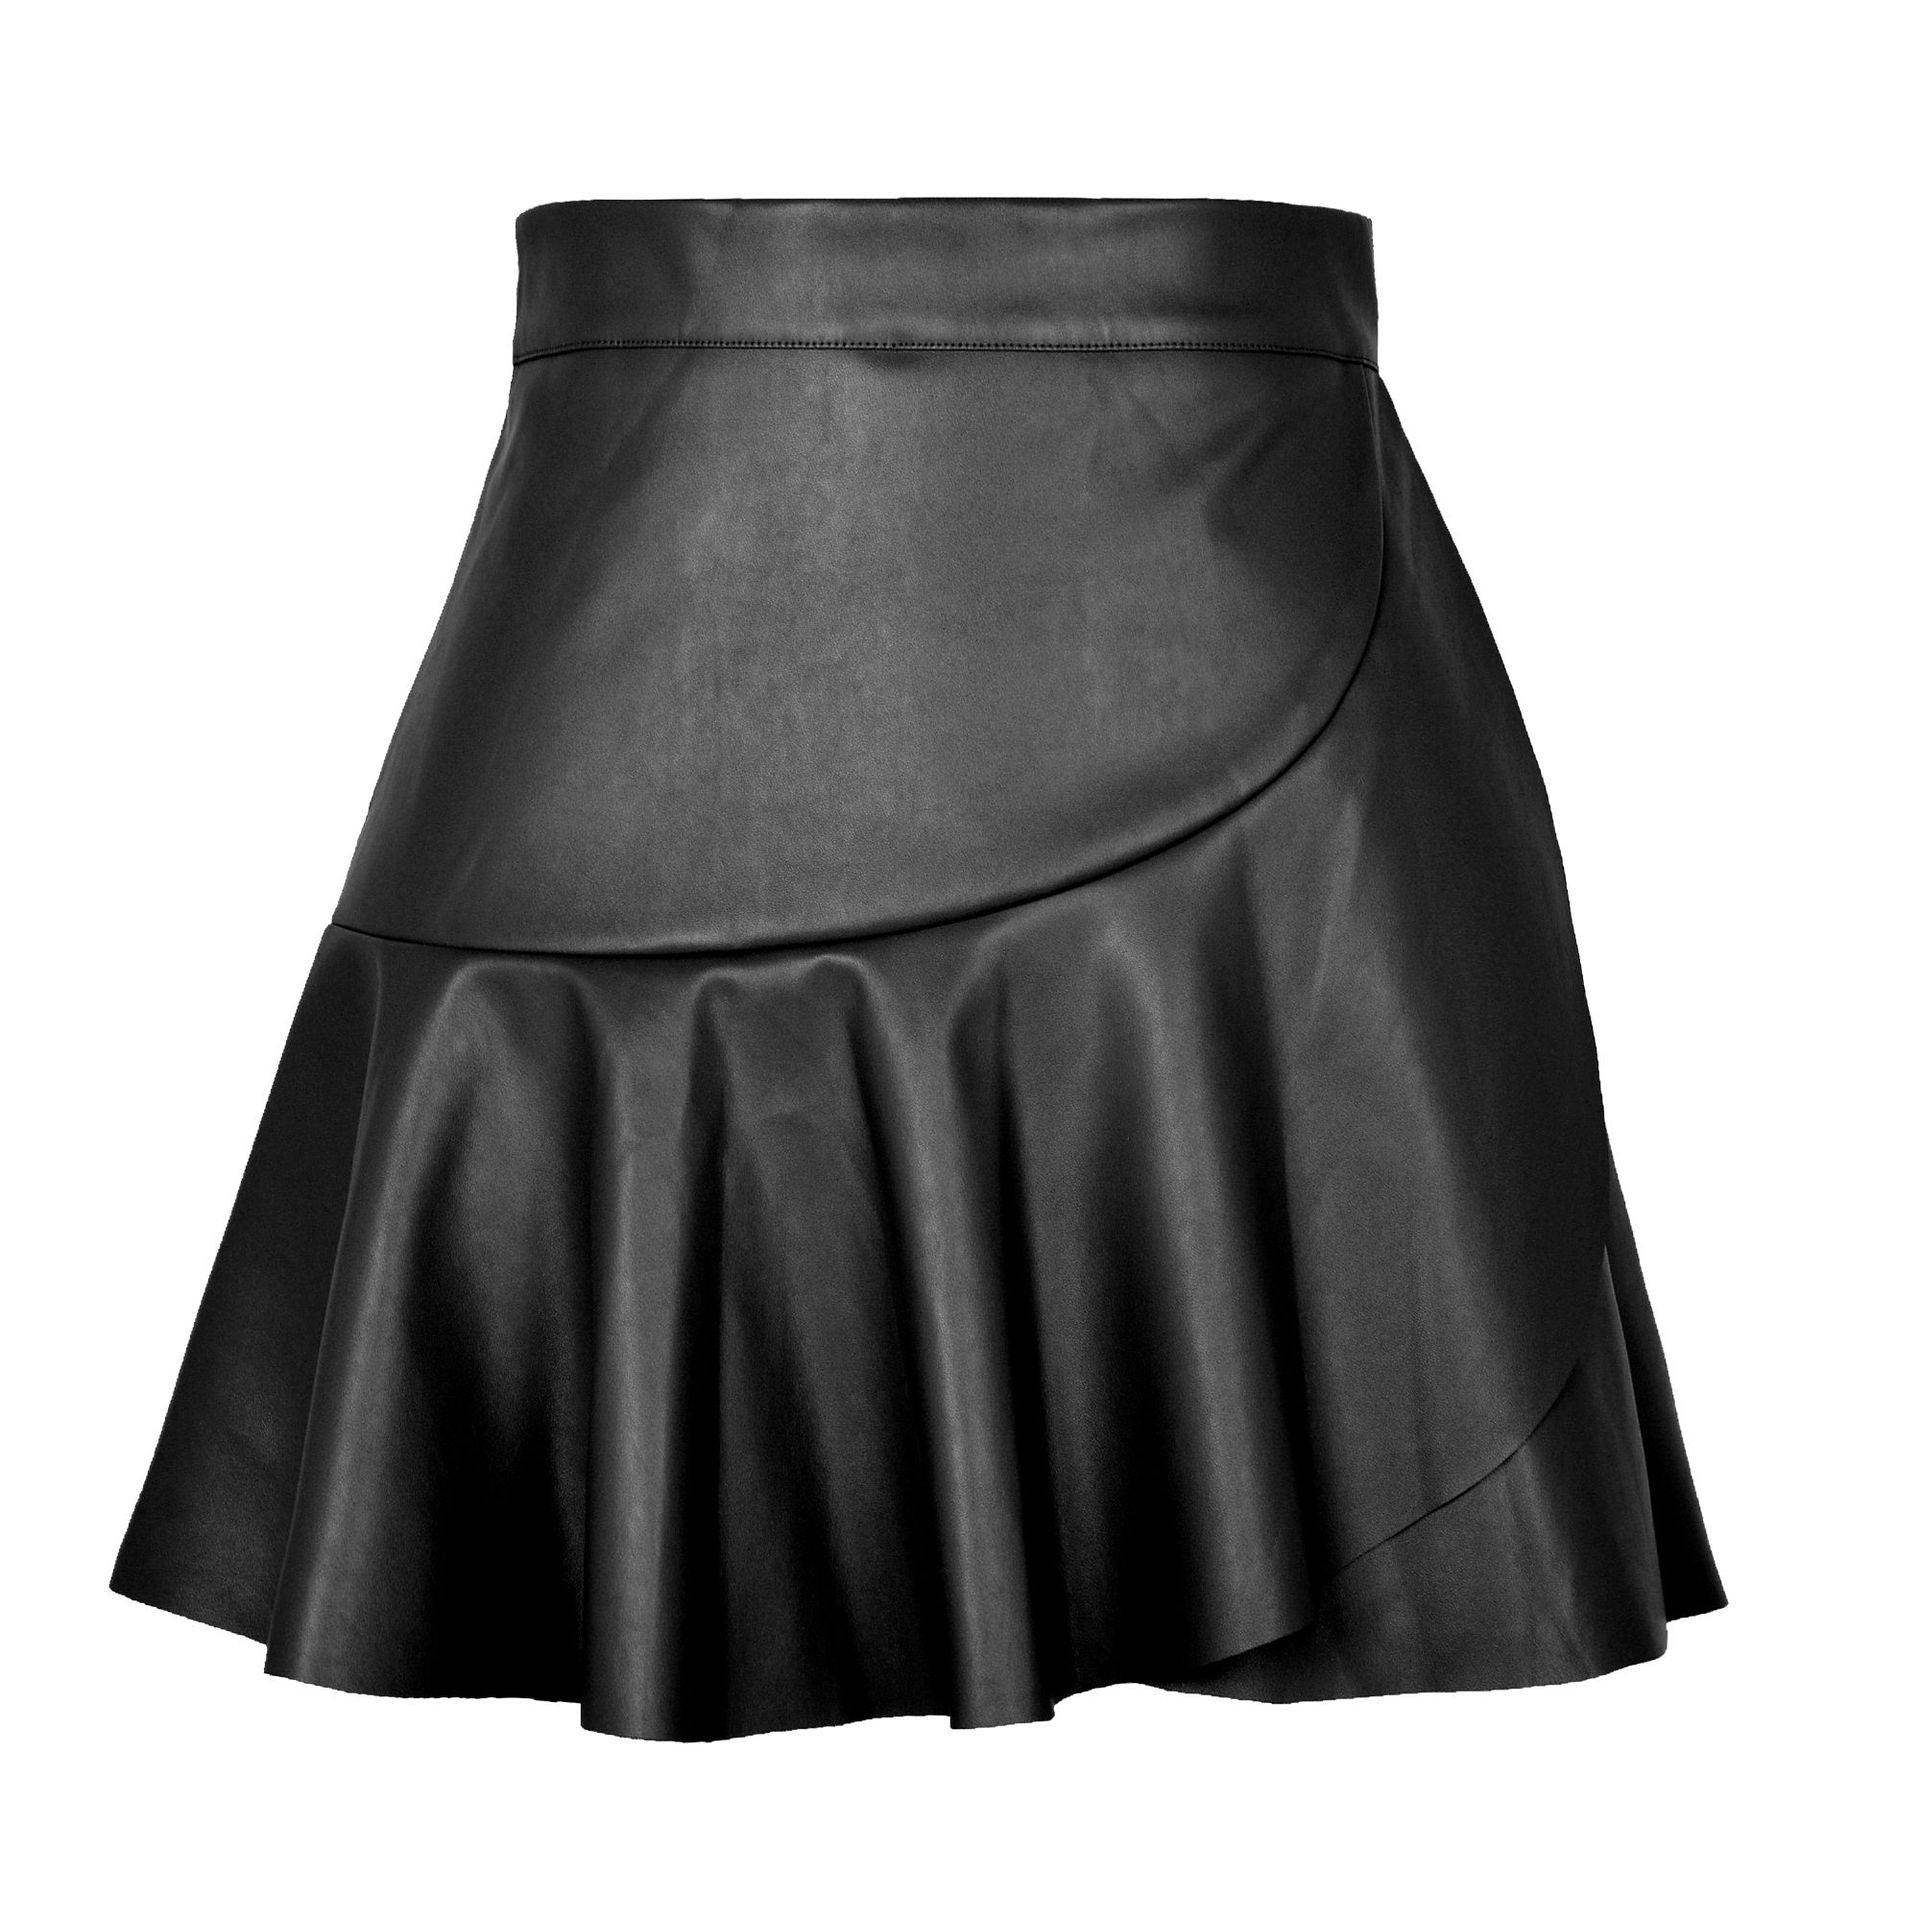 Women's High Waist Ruffles Irregular Sexy Hot Skirts